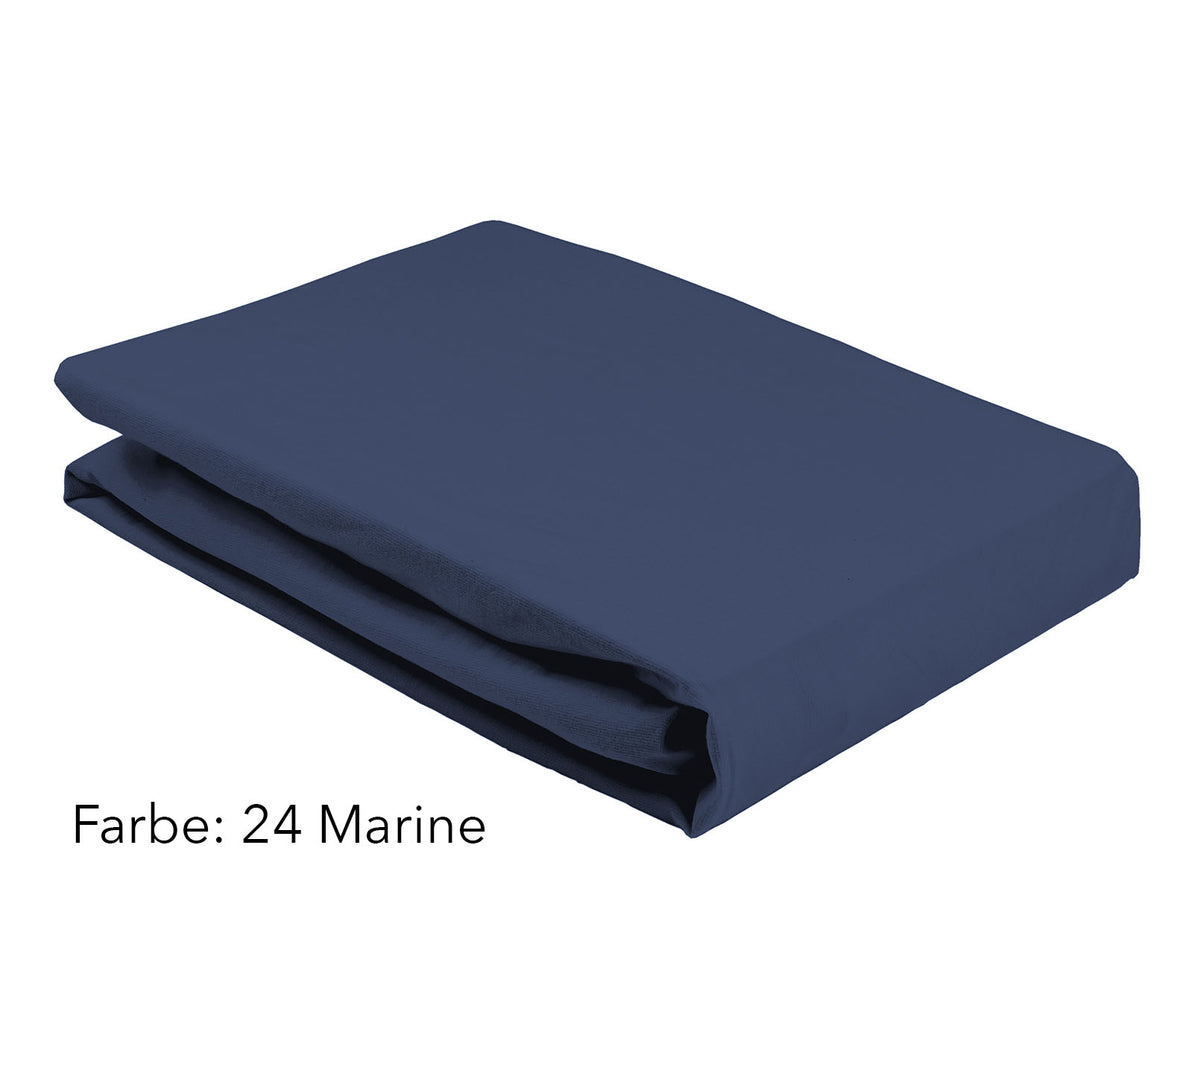 Jersey Spannbettlaken Farbe Dunkelblau Marine #farbe_Marine #farbe_Marine